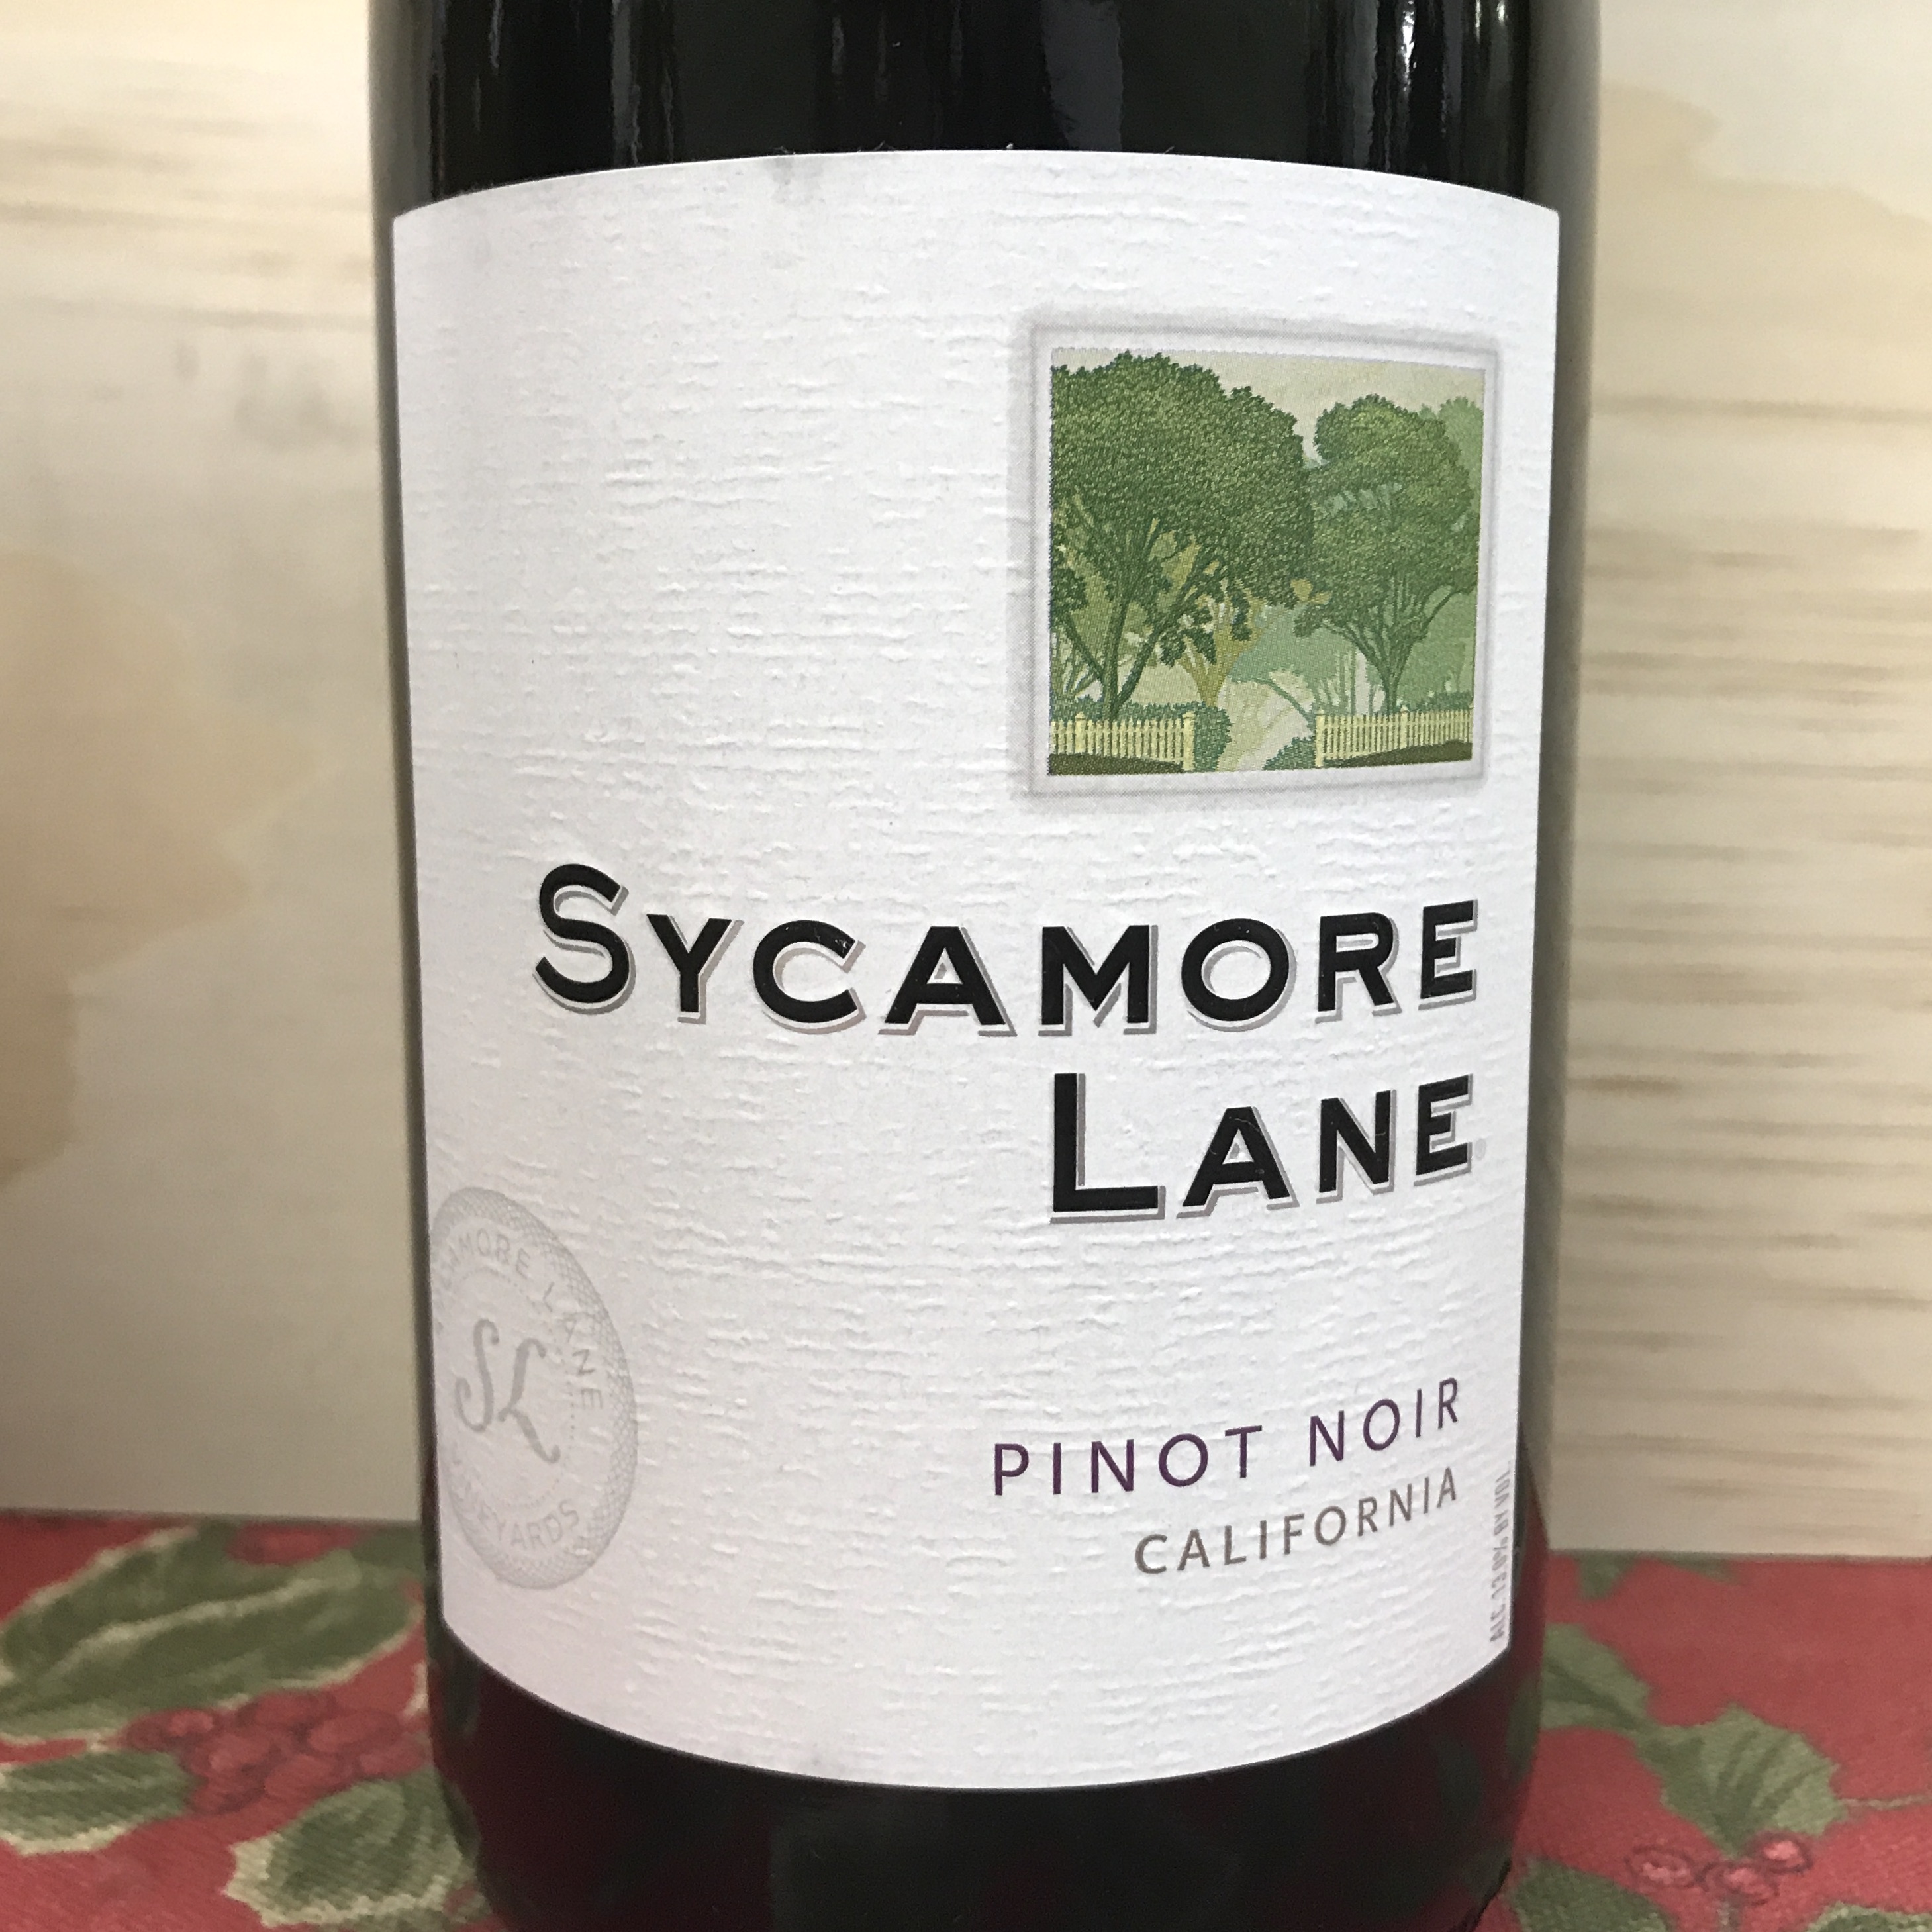 Sycamore Lane Pinot Noir California 2013